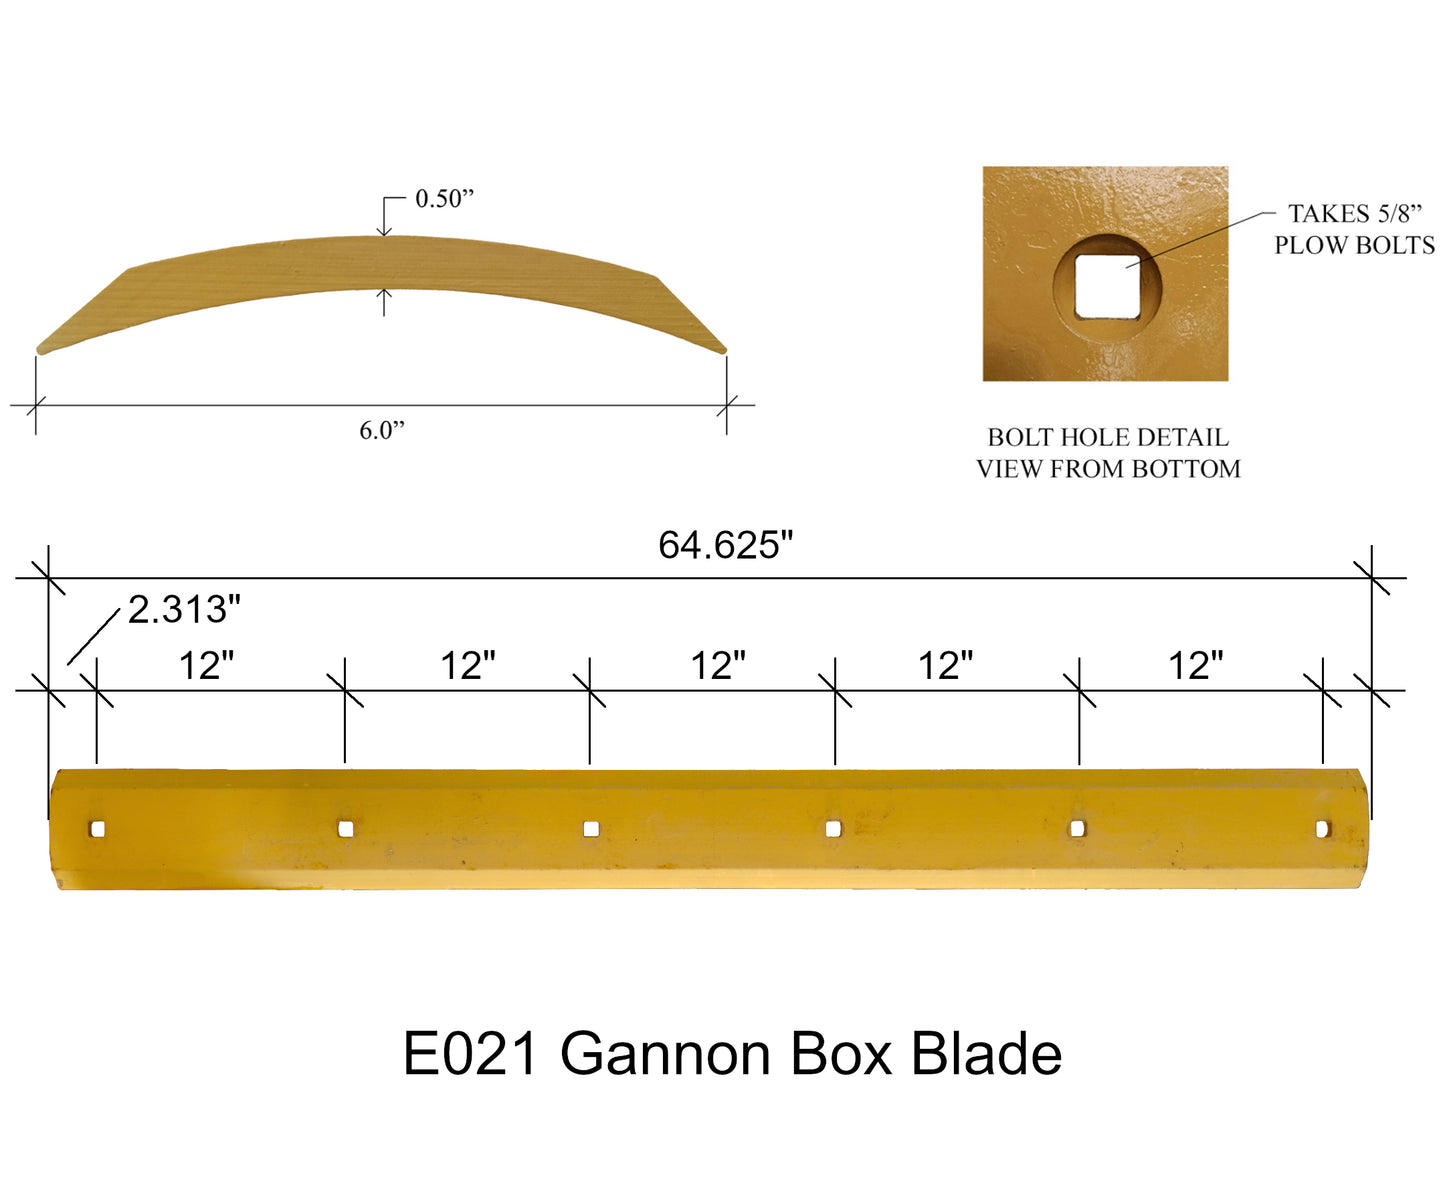 E021 - Scraper Box Blade with Hardware, fits Many Gannon Spreader/Scraper Boxes - 1/2" x 6" x 64.625"